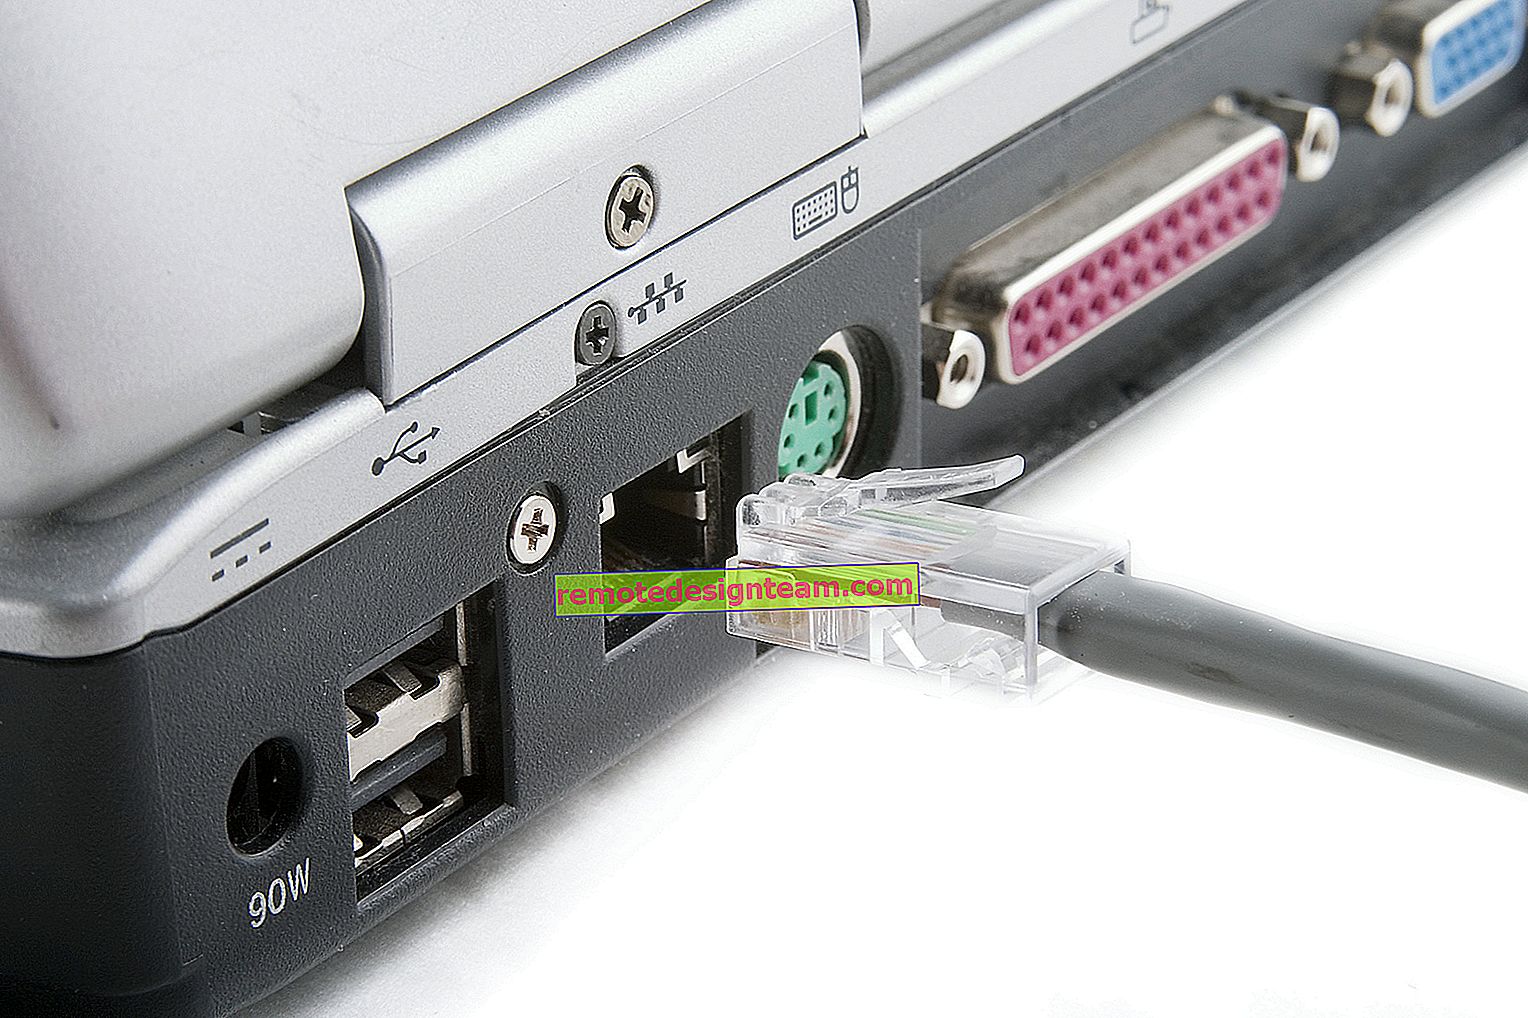 Come limitare la connessione al router tramite l'indirizzo MAC?